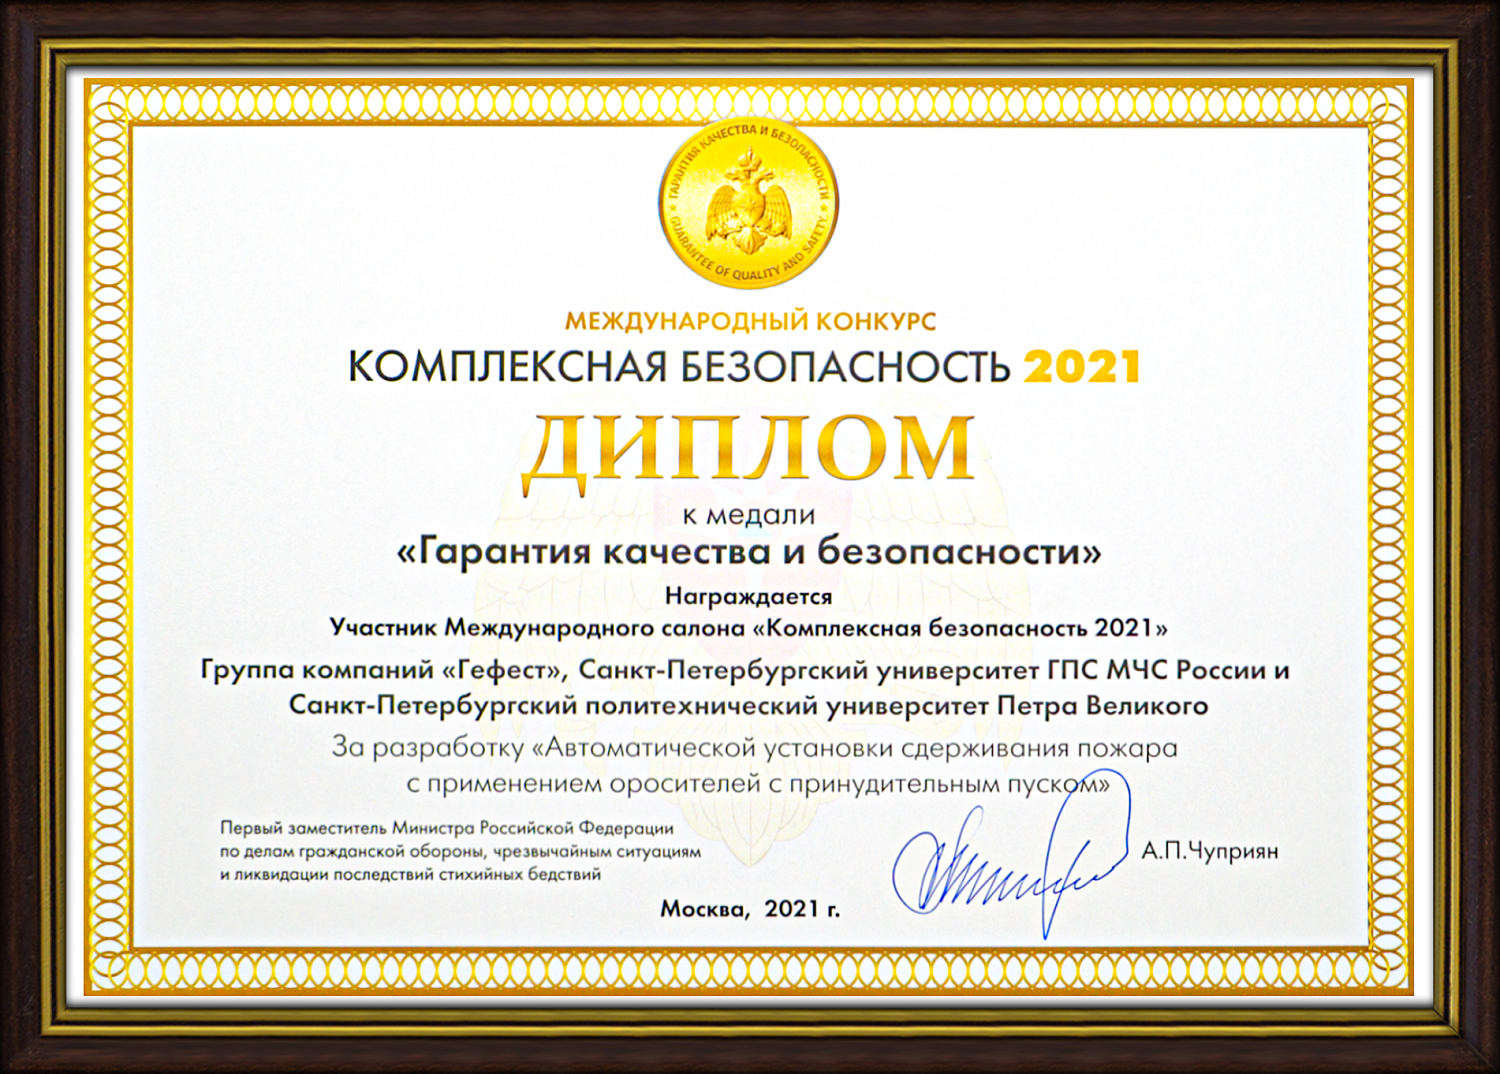 ГК "Гефест" награждена Дипломом и Медалью "Гарантия качества и безопасности" салона «Комплексная безопасность»